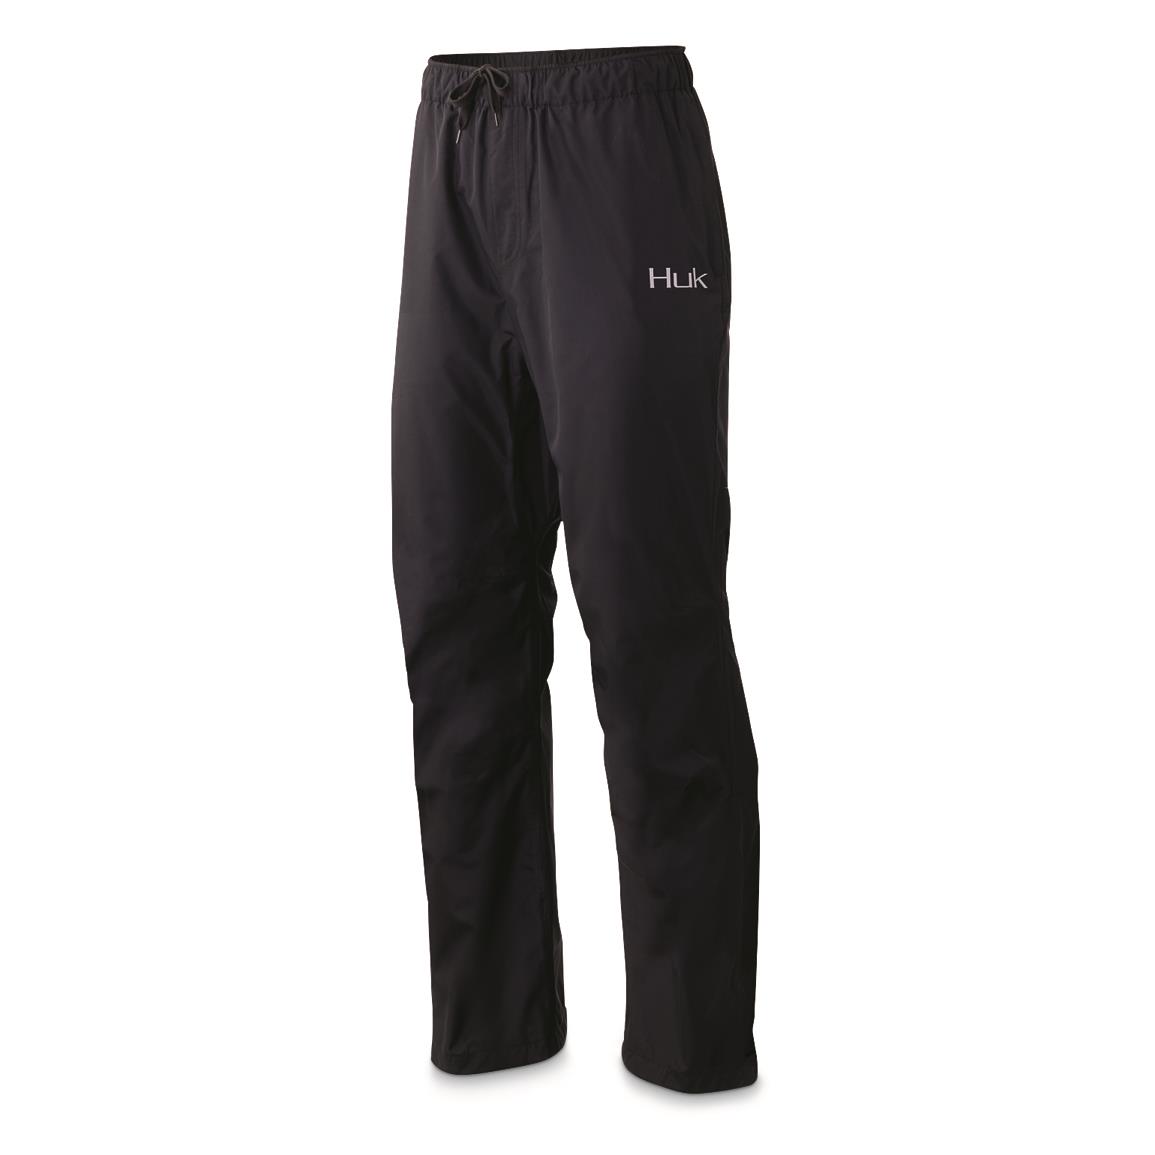 Huk Men's Gunwale Waterproof Pants, Black